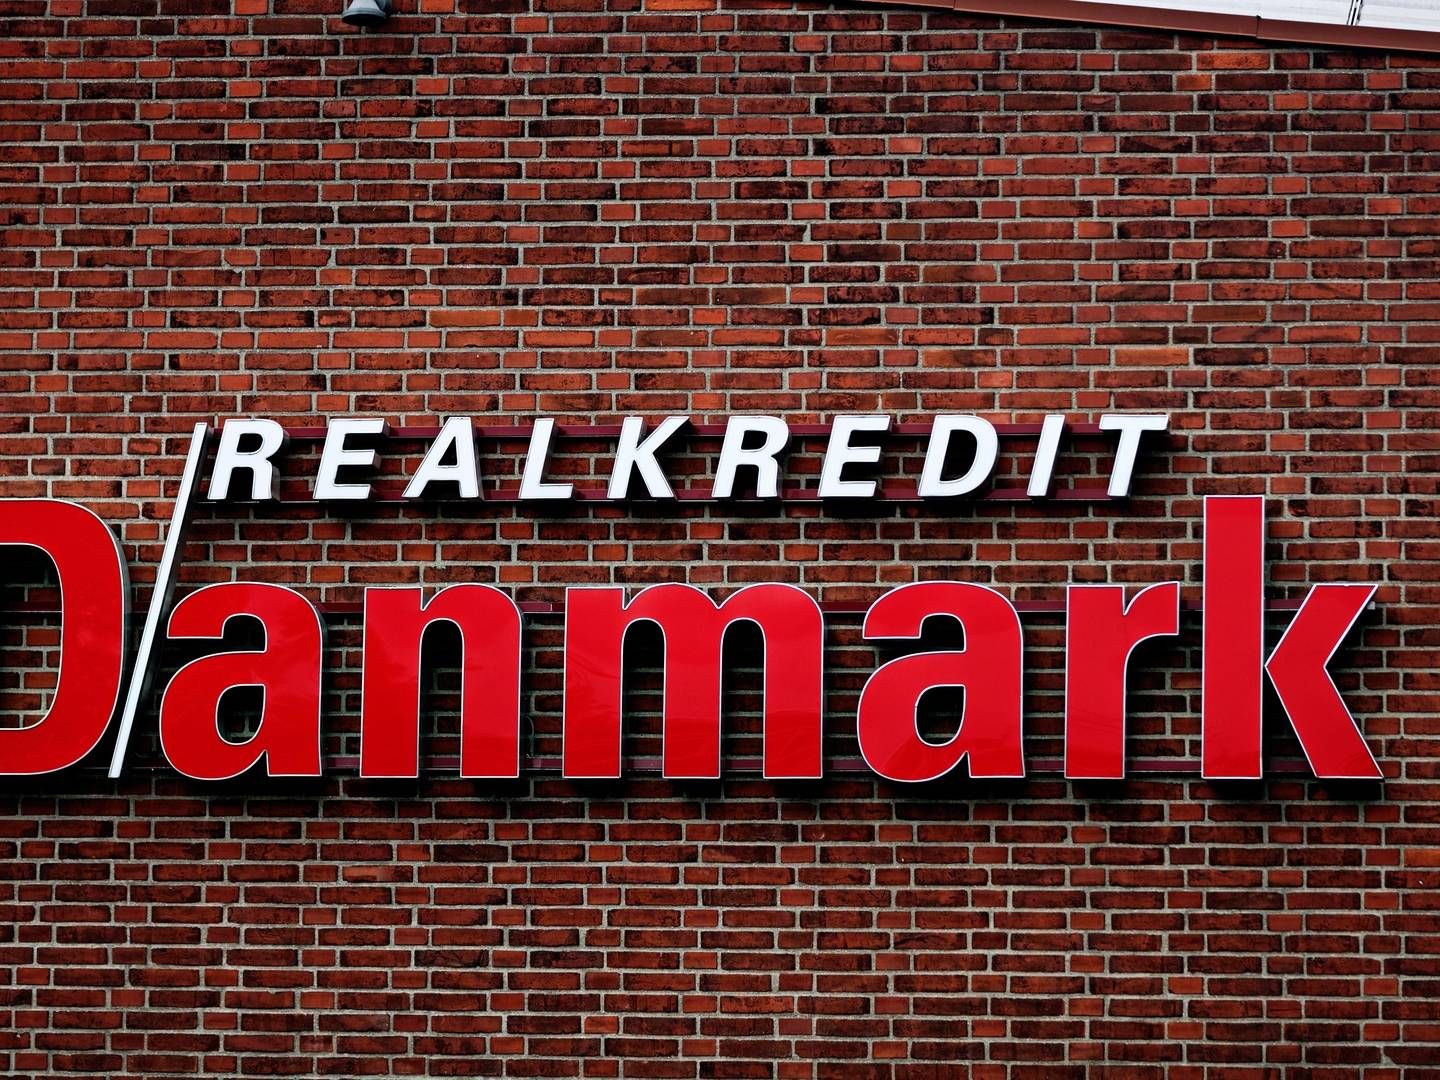 Realkredit Danmark er ejet af Danske Bank, der også har præsenteret kvartalsregnskab fredag. | Foto: PR/Realkredit Danmark